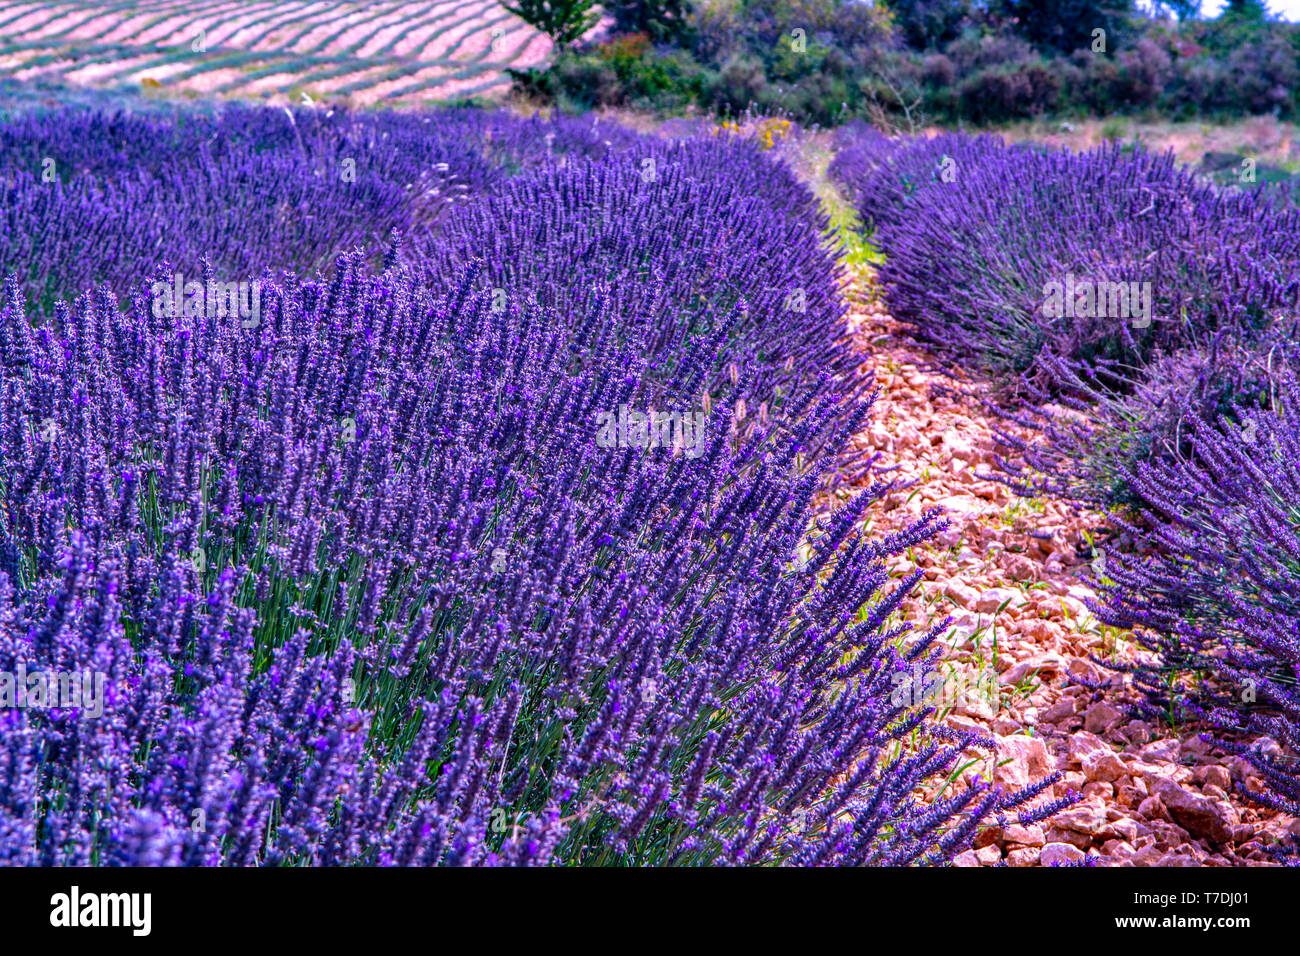 Lavendel der Provence, Sommer lila Lavendel Felder mit blühenden Pflanzen  in Van de Sault, Vaucluse, Frankreich, Natur Hintergrund Stockfotografie -  Alamy